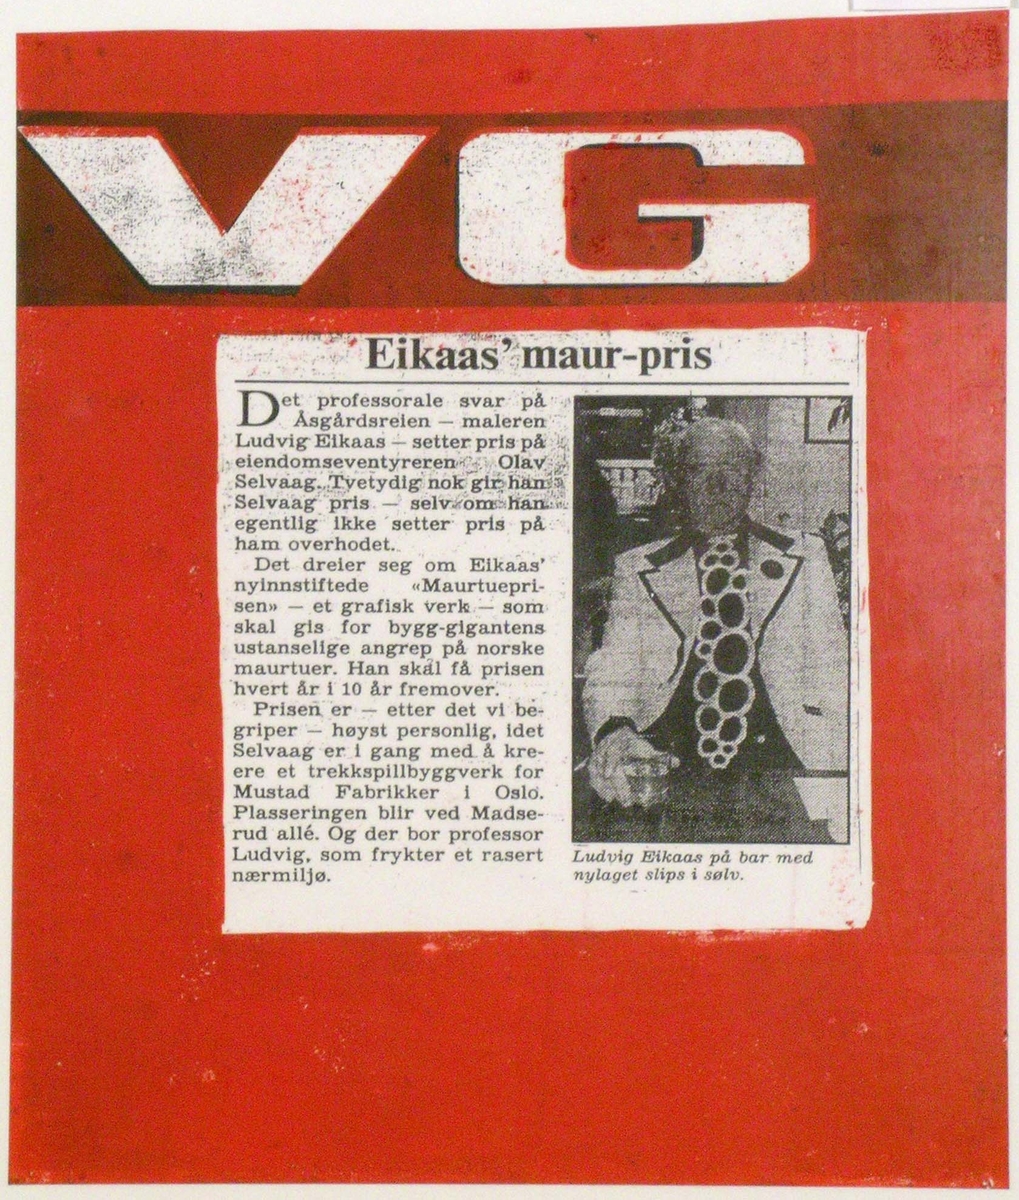 VG Eikaas' maur-pris [Grafikk]